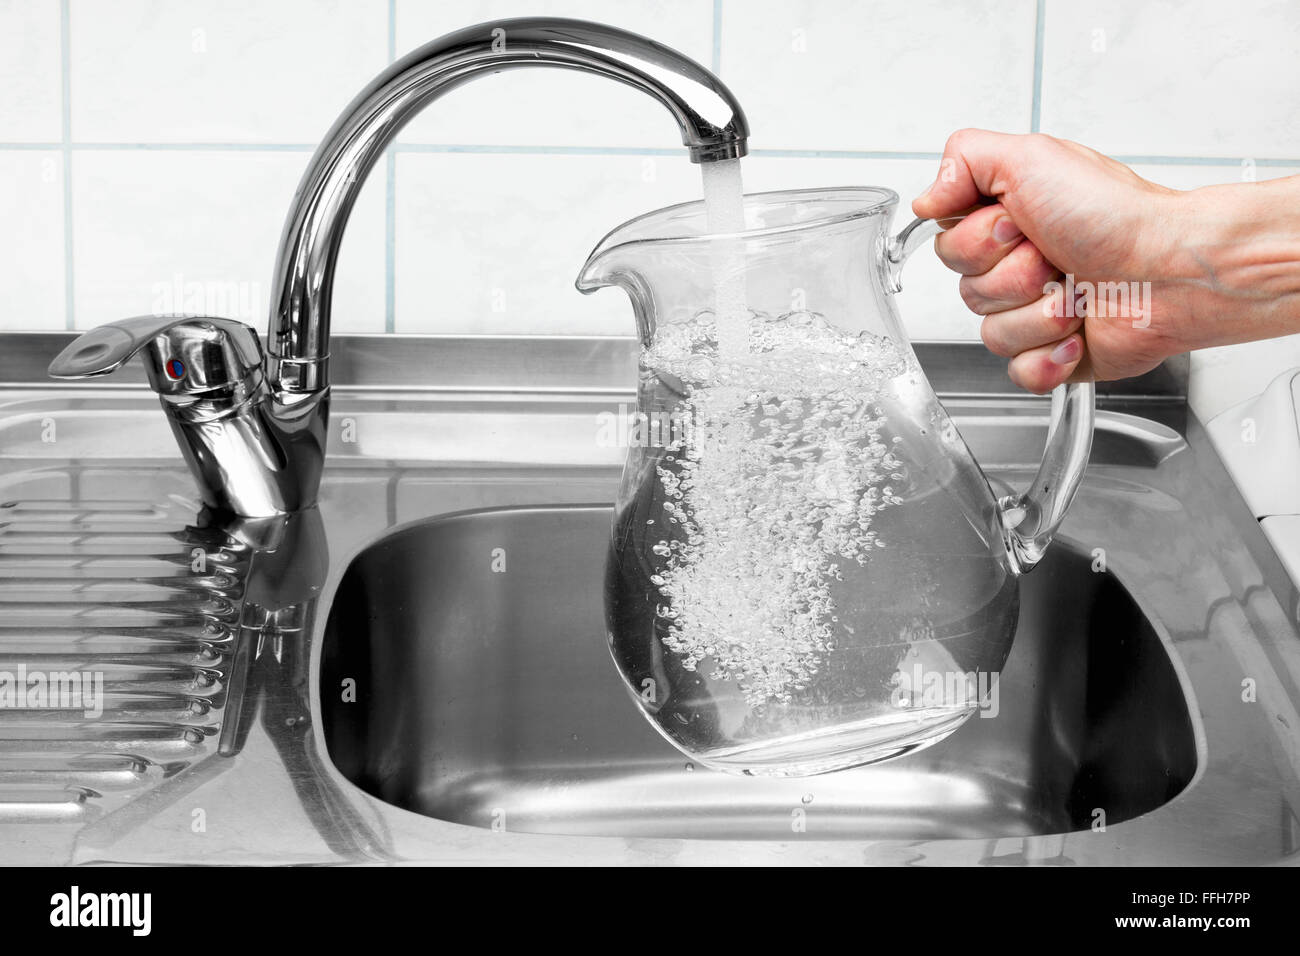 Mano sujetando una jarra de agua que se vierte desde el grifo de cocina. Foto de stock